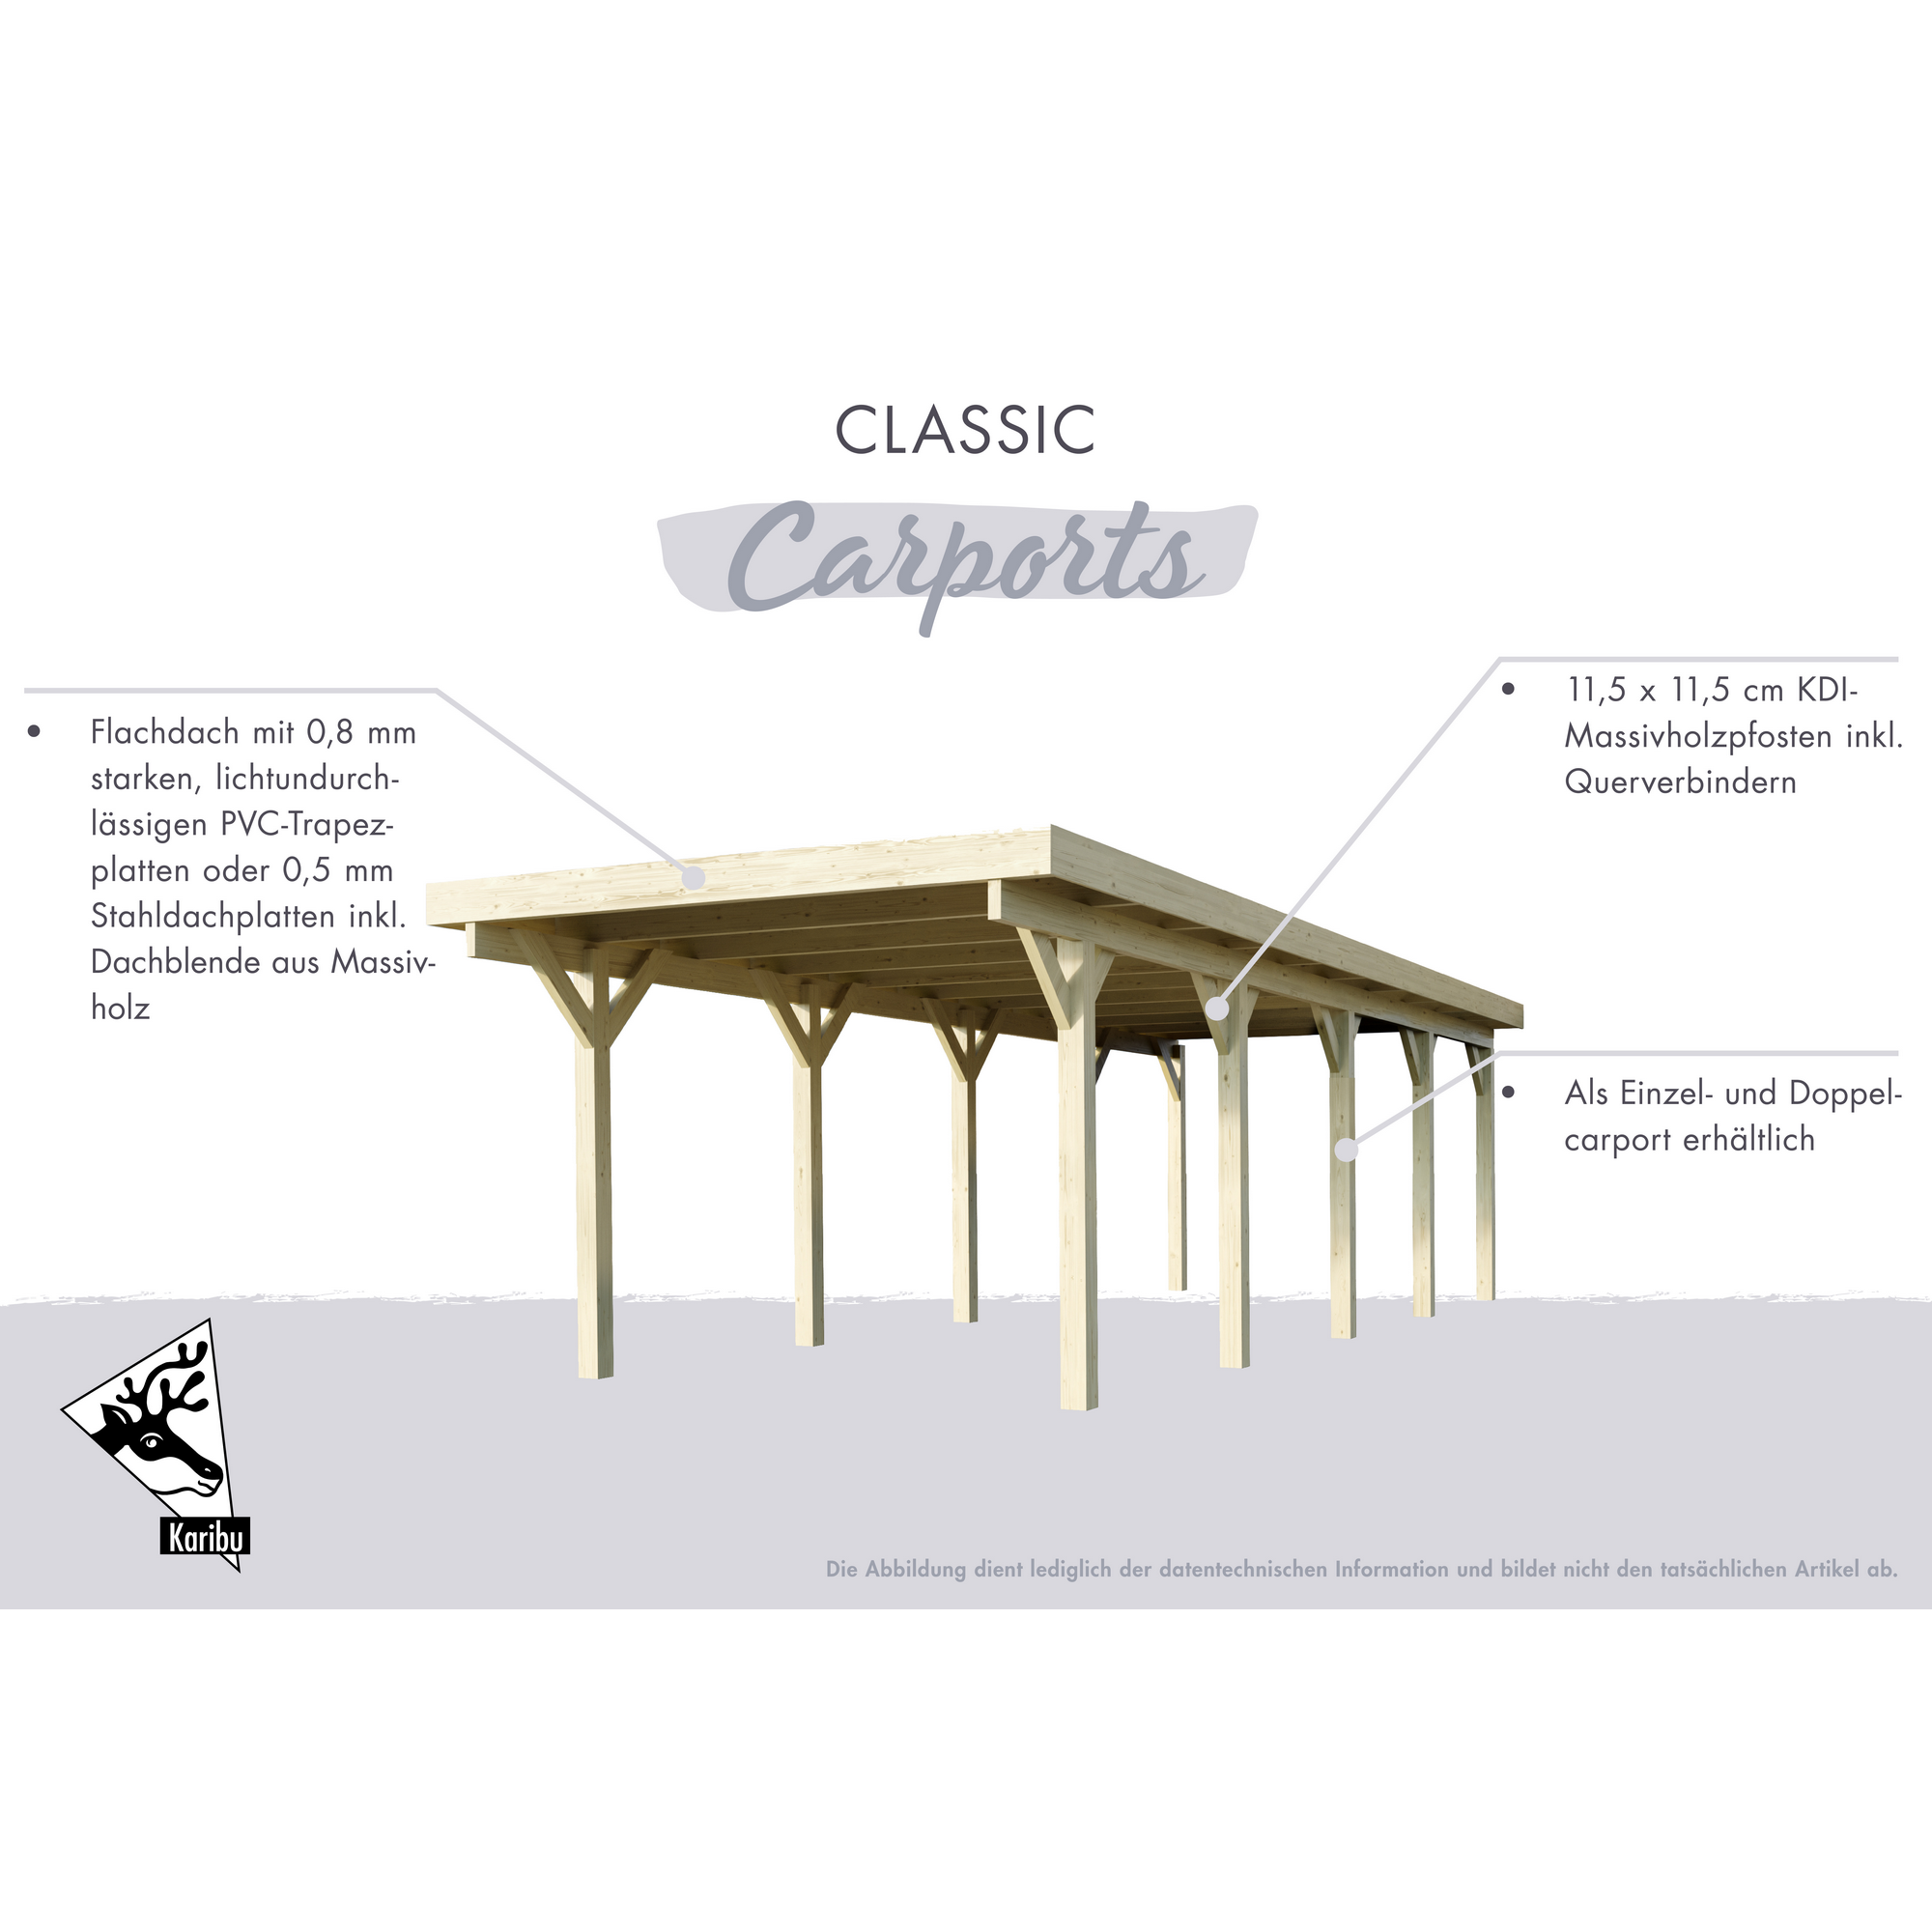 Einzelcarport 'Carlos 3' Kiefer PVC-Dach mit zwei Einfahrtsbögen 860 x 318 x 234 cm + product picture